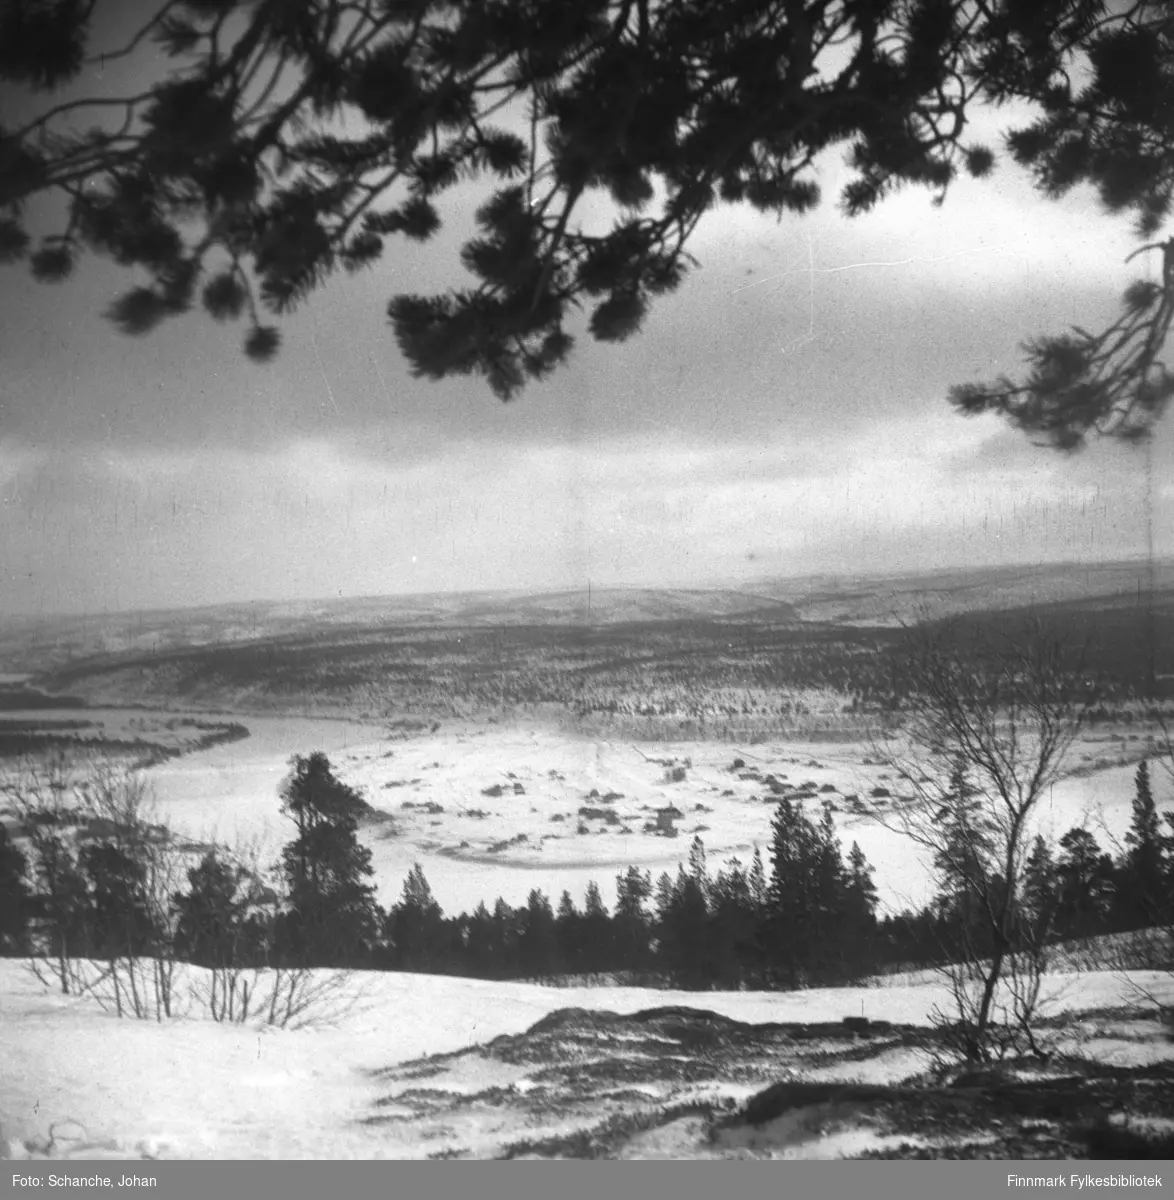 Oversiktsbilder over Karasjok tatt fra fjellet ned mot bygda i dalen.  Fotografen har stått under en stor furu, furugrein henger over landskapet på bildet.  Samme motiv som i FBib.95066-105 og 106.